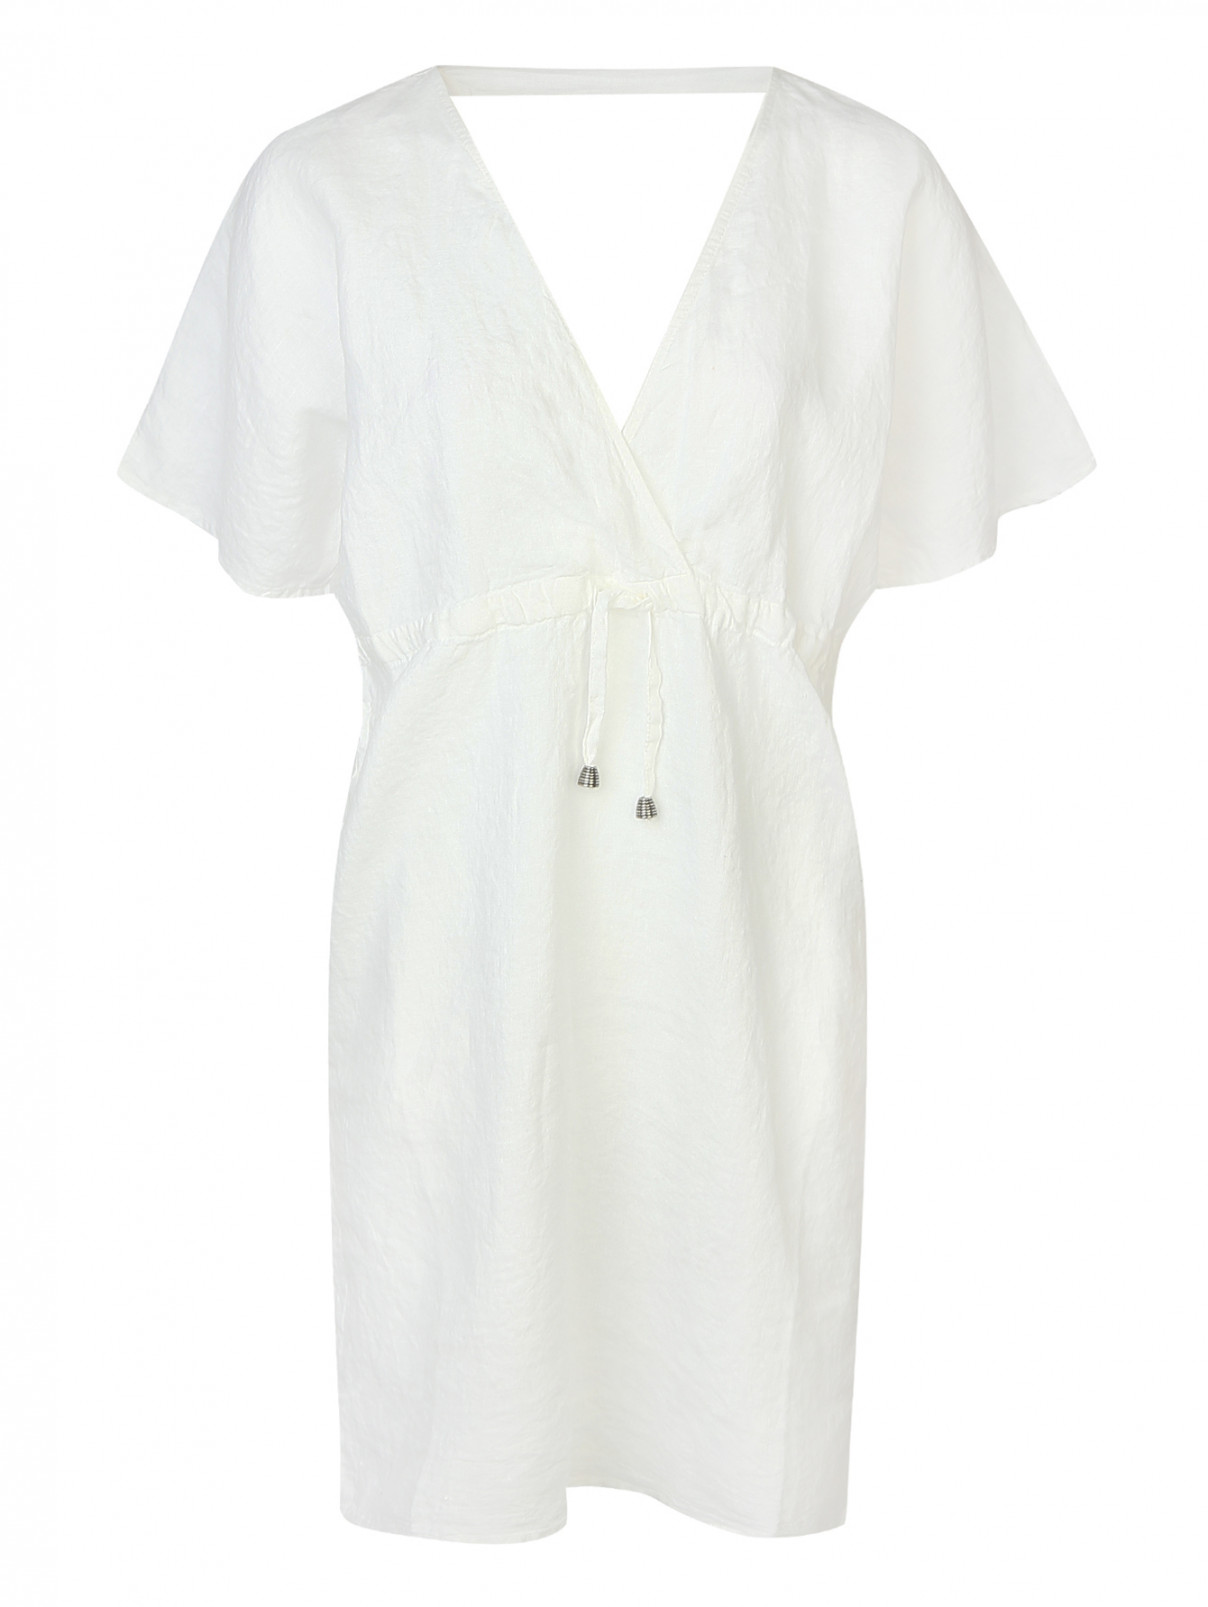 Платье из льна La fabrica del lino  –  Общий вид  – Цвет:  Белый